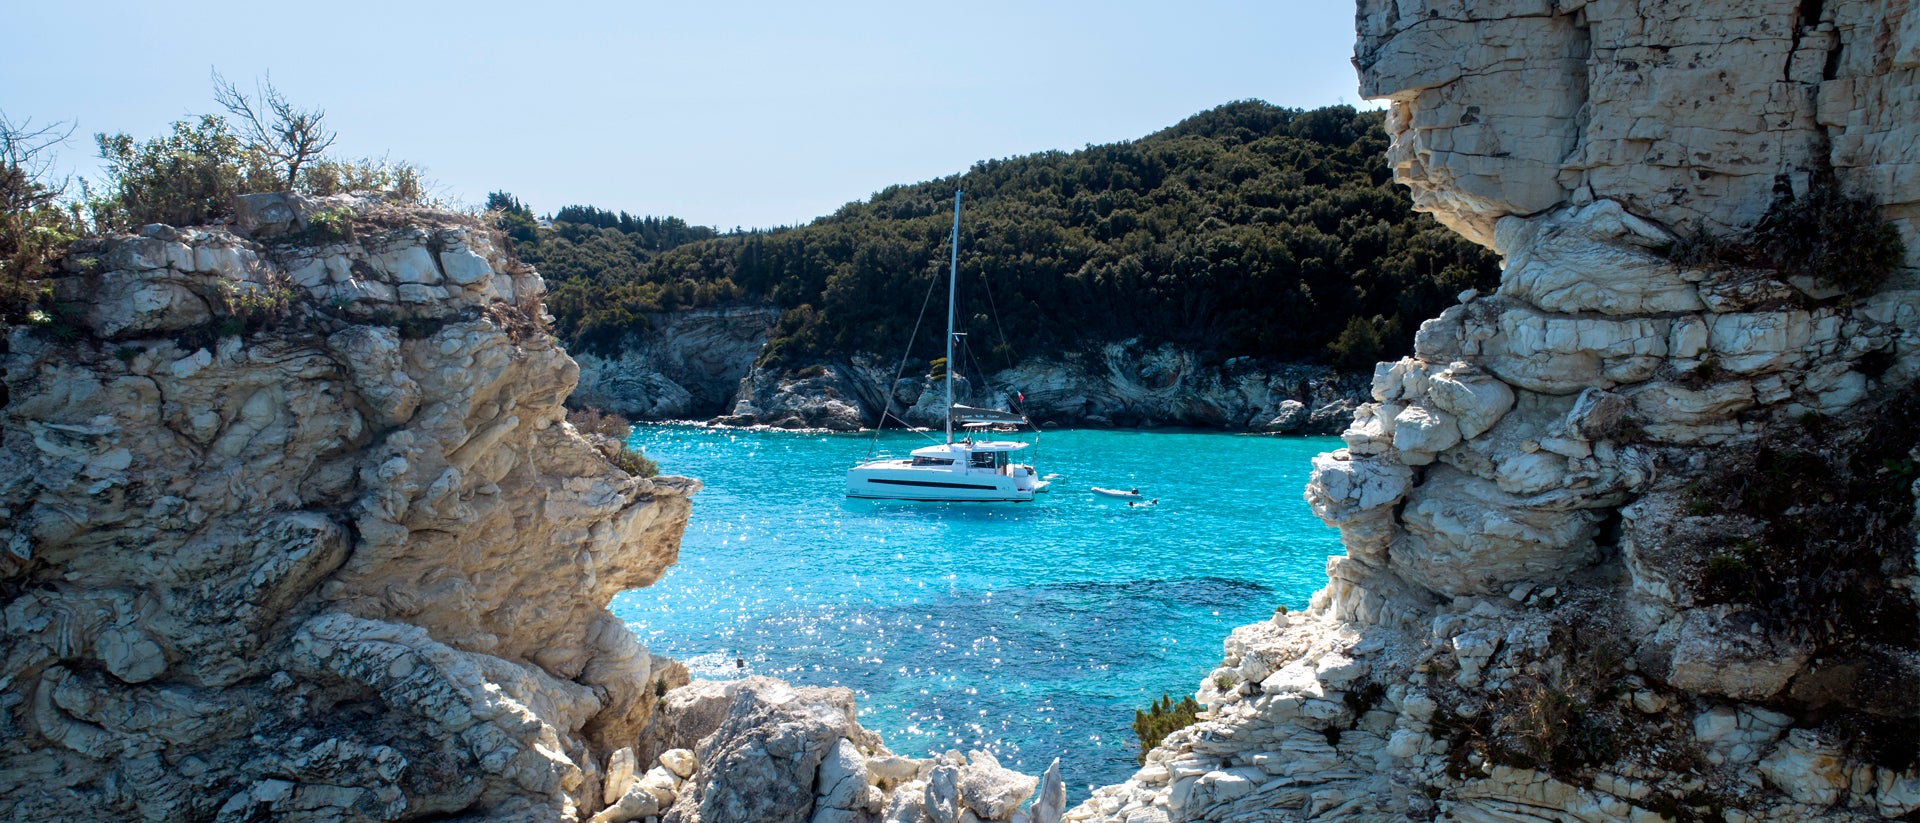 Yachtcharter in einer Bucht mit Meer und Felsen